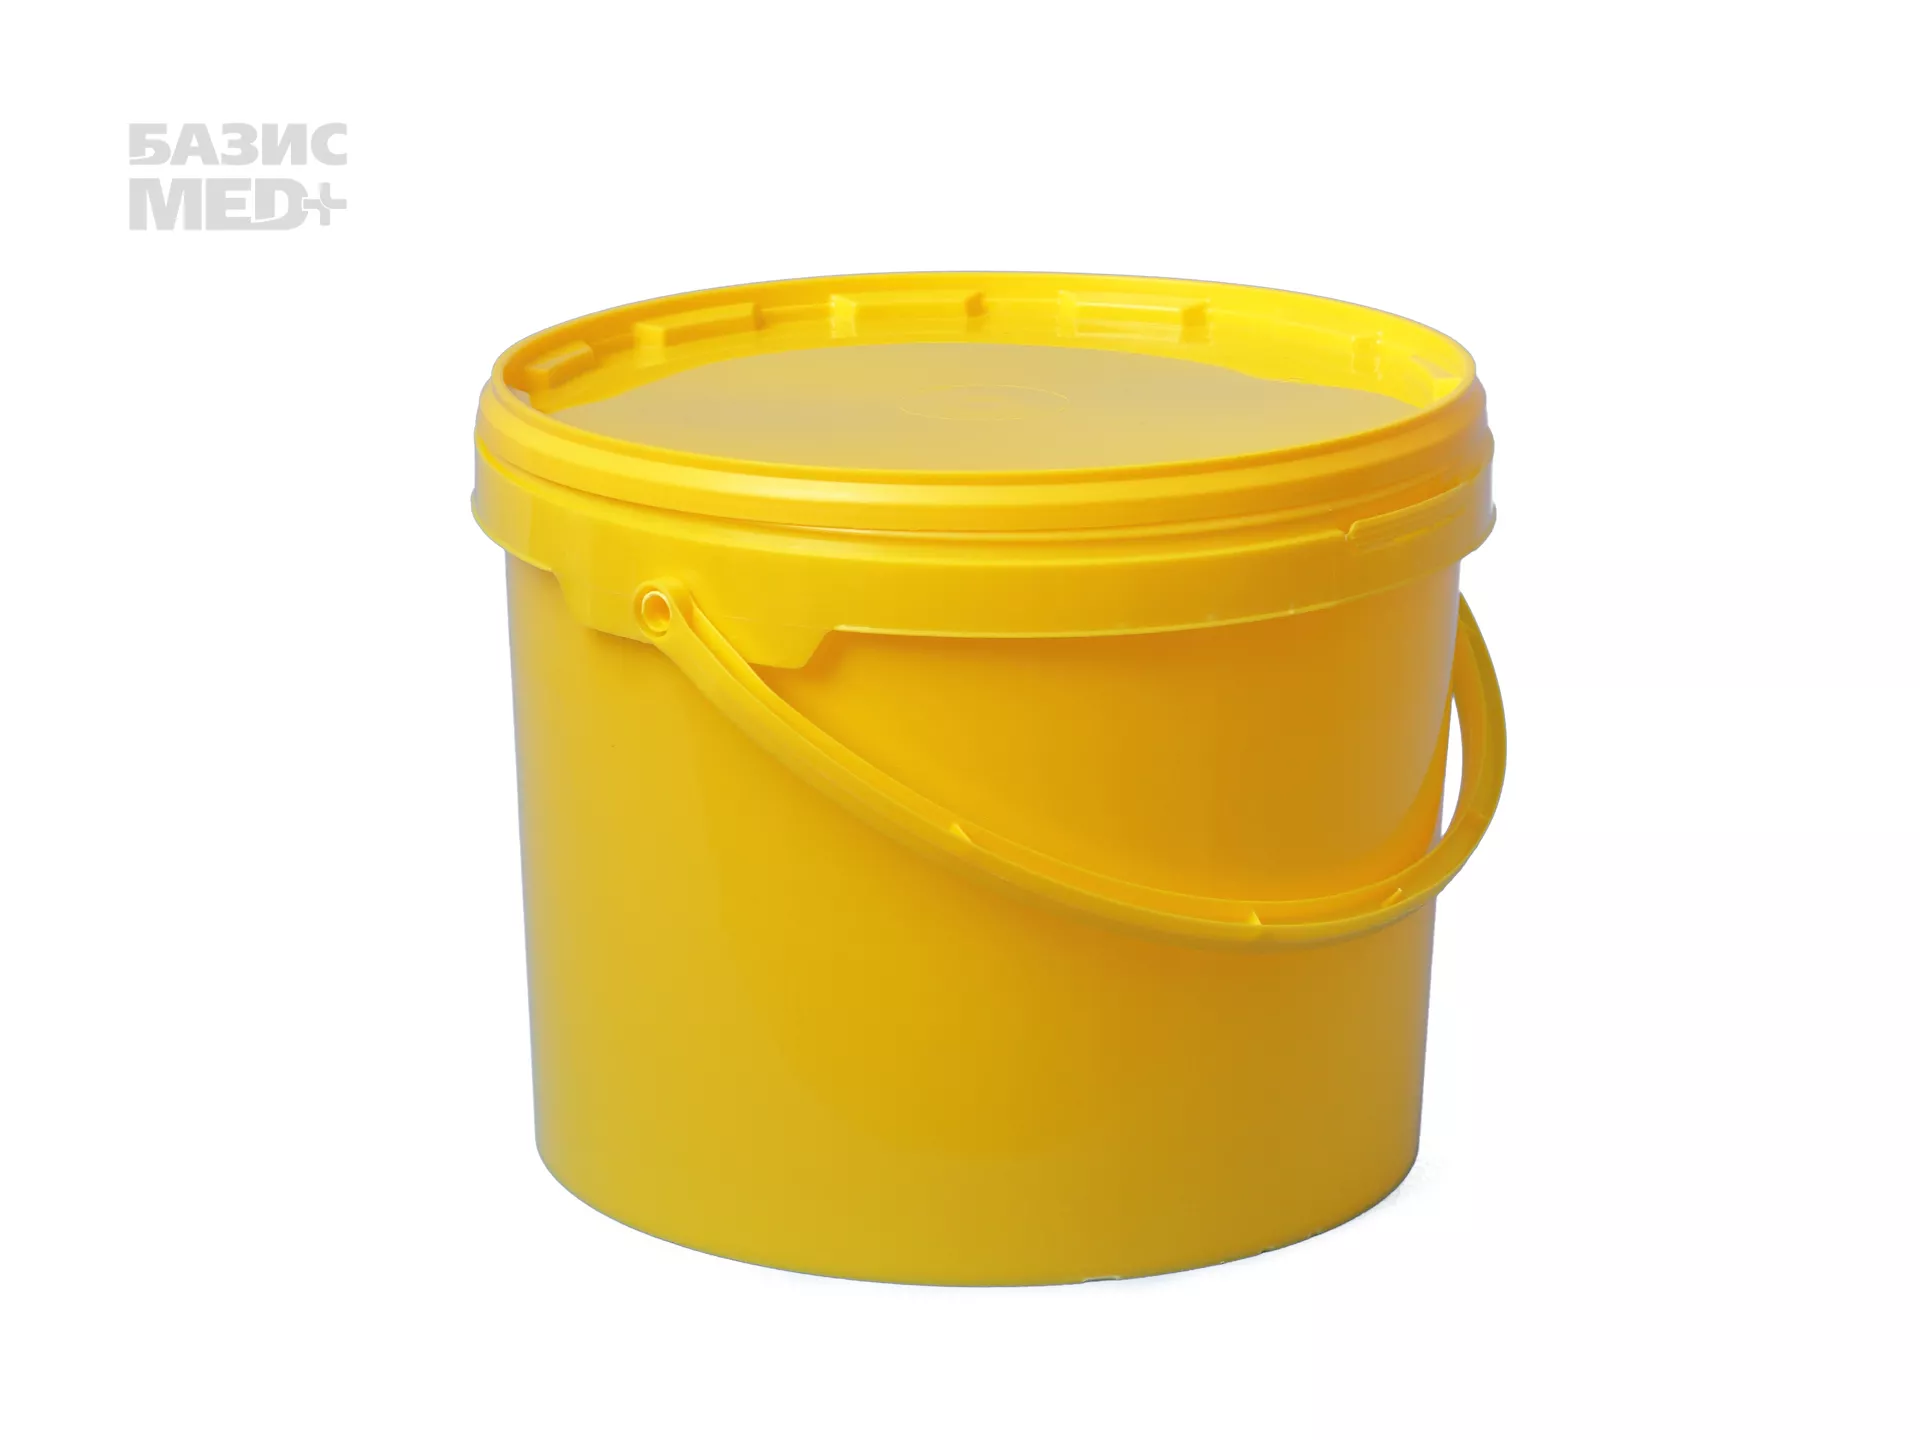 Бак 10,0л для сбора, хранения медицинских отходов (класс Б), с крышкой, цвет желтый, многоразовый